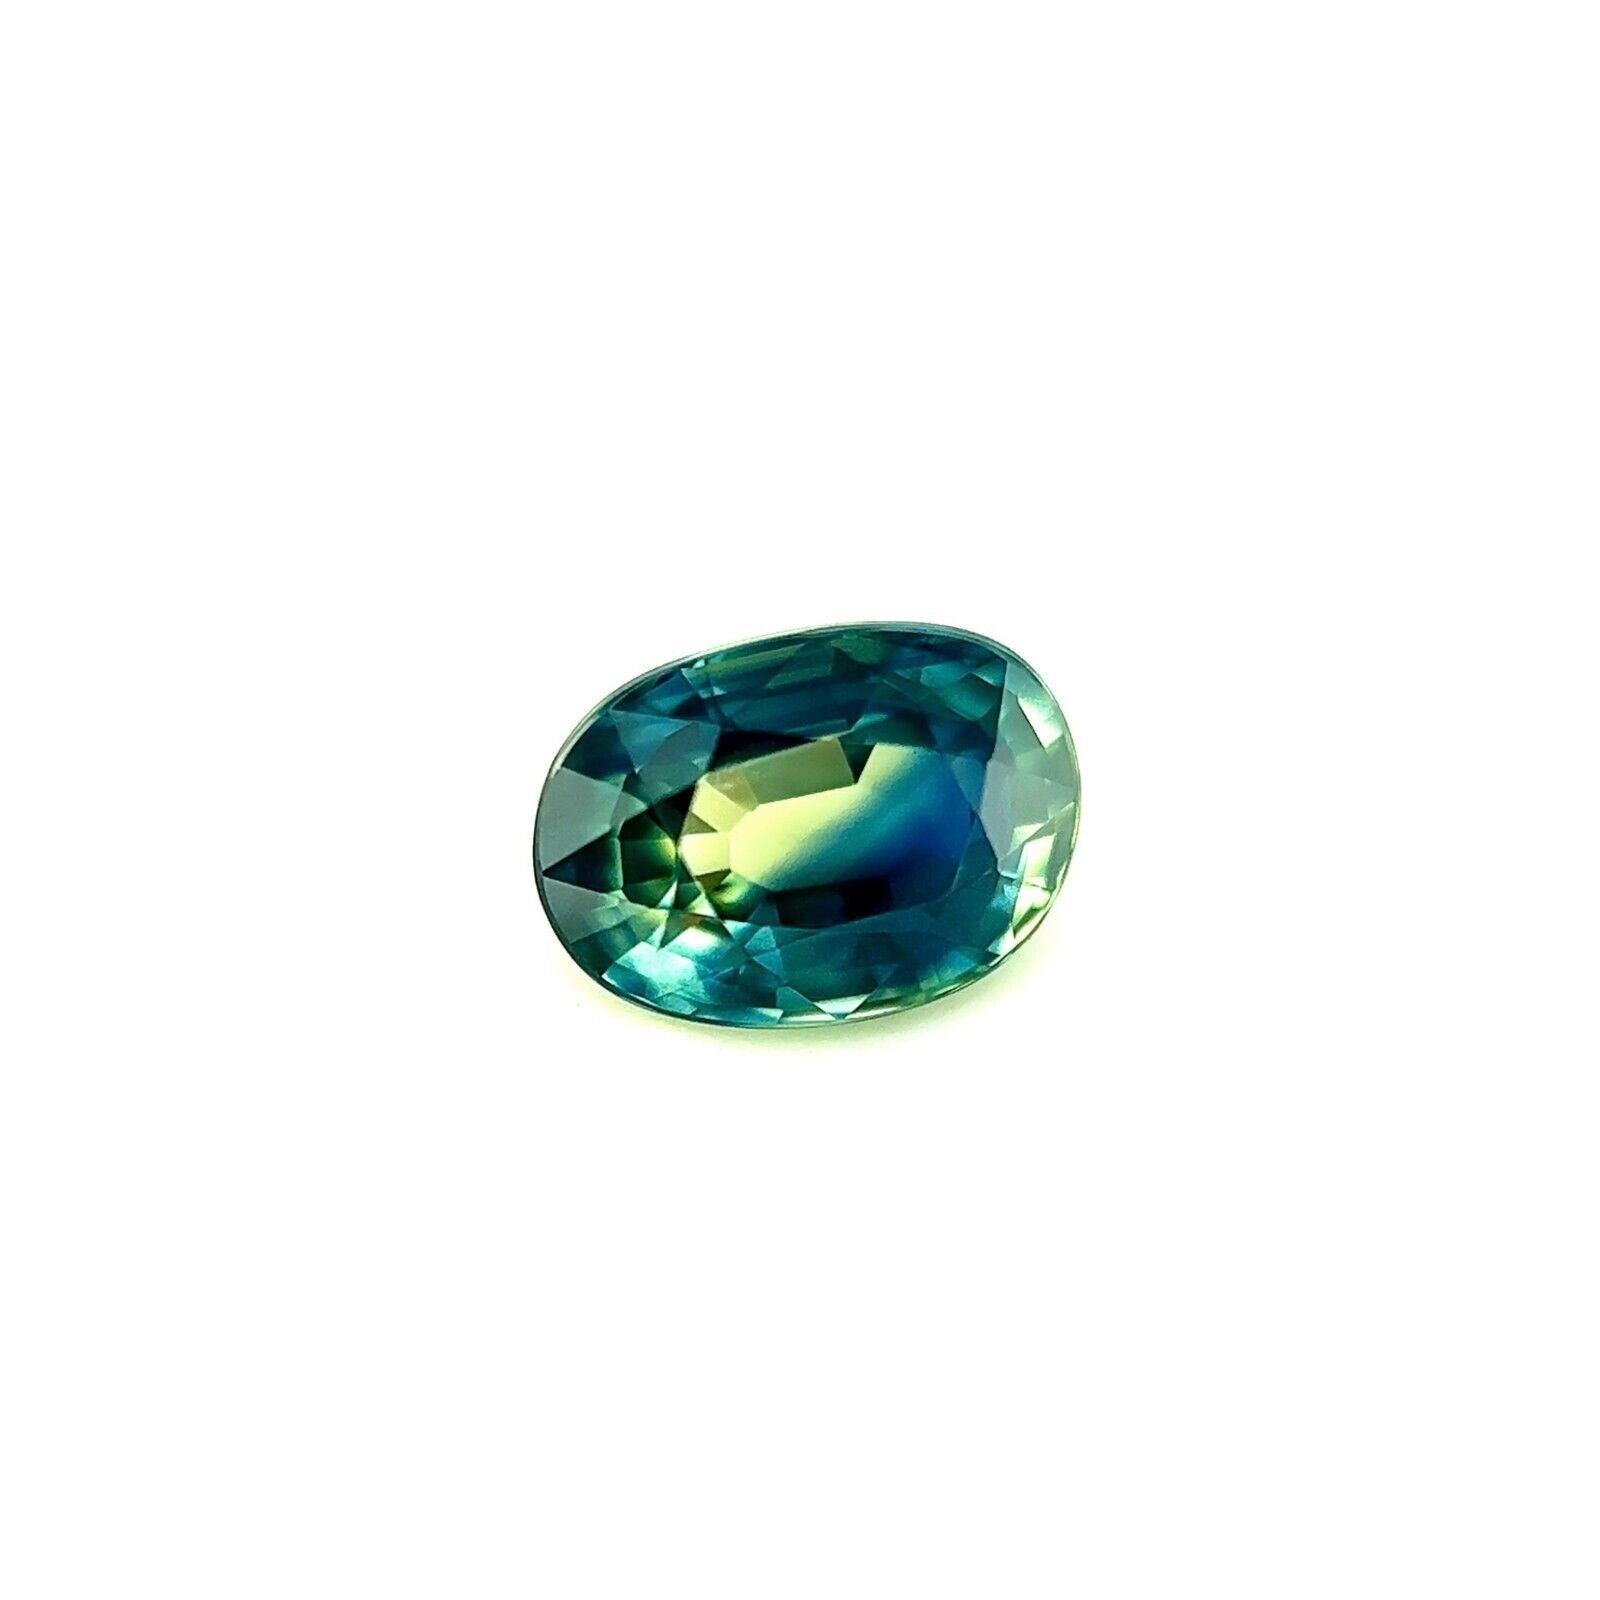 Saphir thaïlandais ovale de 1,00 carat de couleur partielle bleue et verte, taille libre 6,5 x 4,5 mm

Saphir thaïlandais naturel de couleur bleu-vert.
1,00 carat avec une belle et unique couleur vert bleu parti et une excellente clarté, une pierre